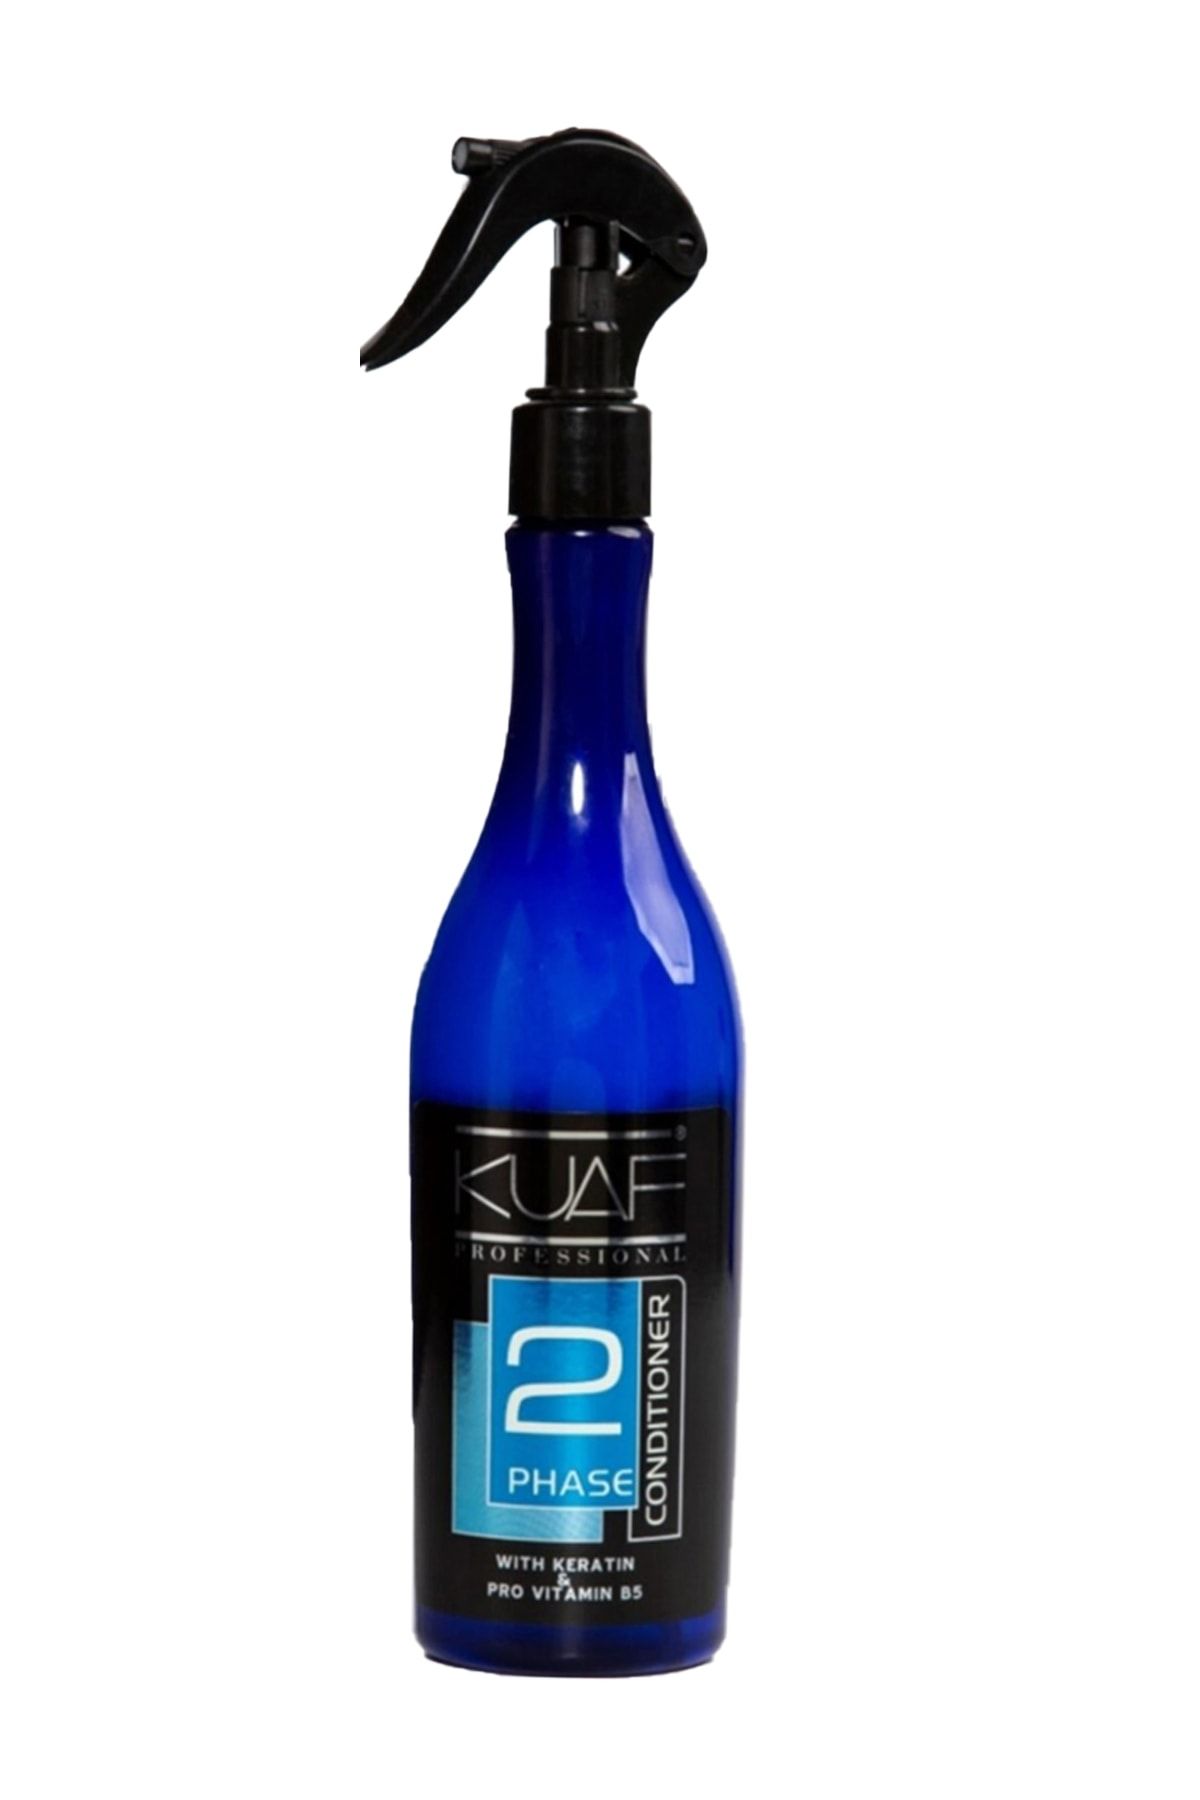 Kuaf Keratinli Kırılma Karşıtı Mavi Fön Suyu Sıvı Saç Kremi 400 ml